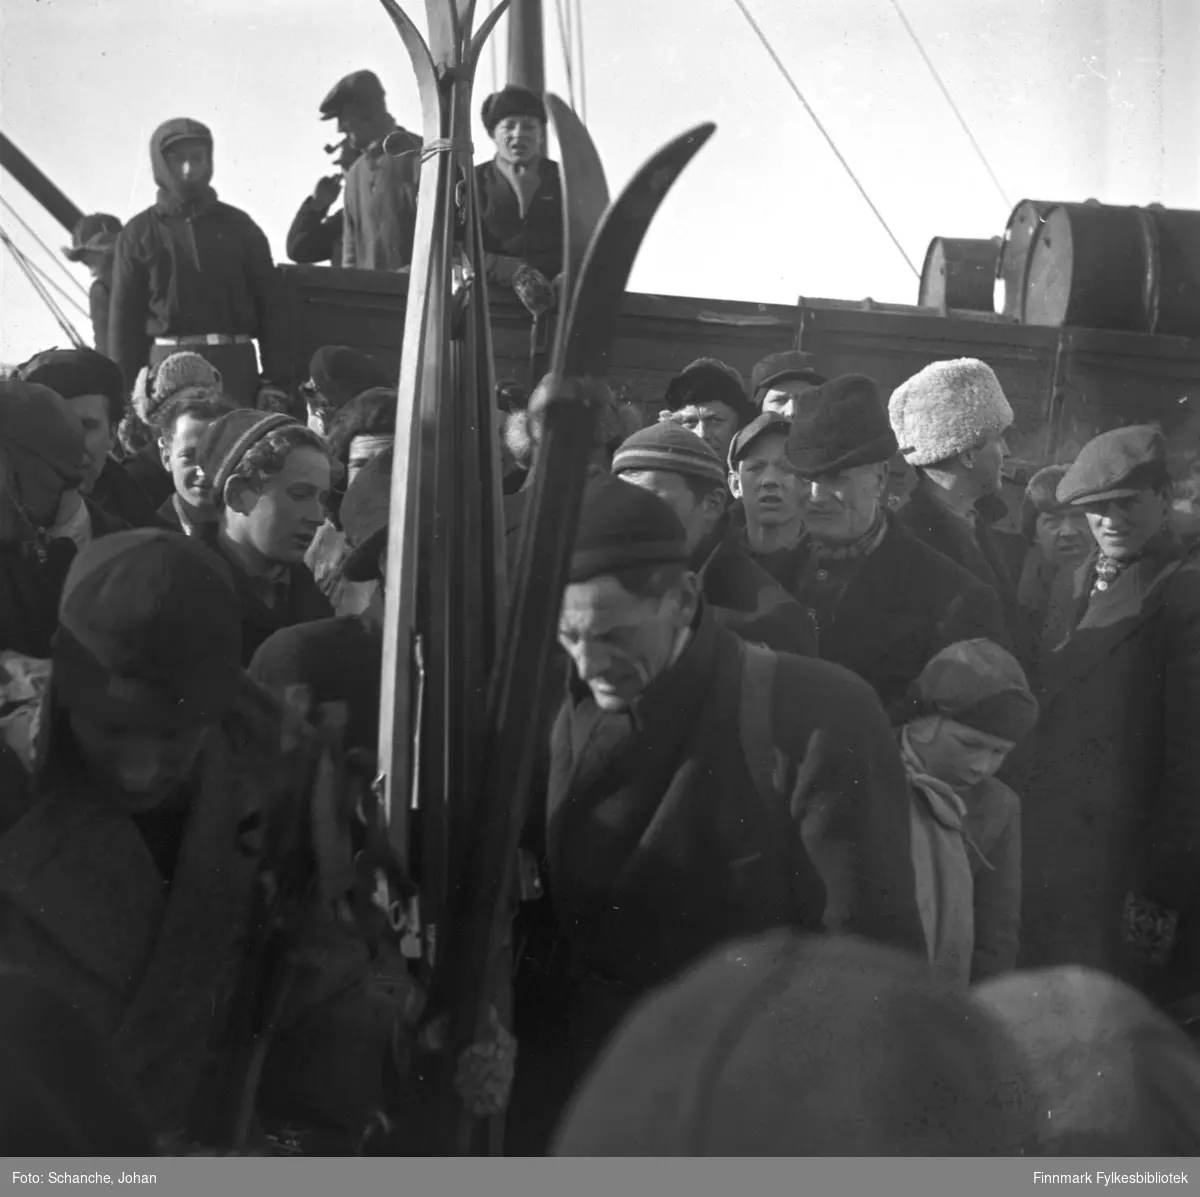 Fra kretsrennet i Vadsø 1946. Olav Odden ankommer Vadsø for å delta. Vi ser han midt på bildet, bak noen skipar. Det er flere på bildet. De er kledt i luer og skjerf.